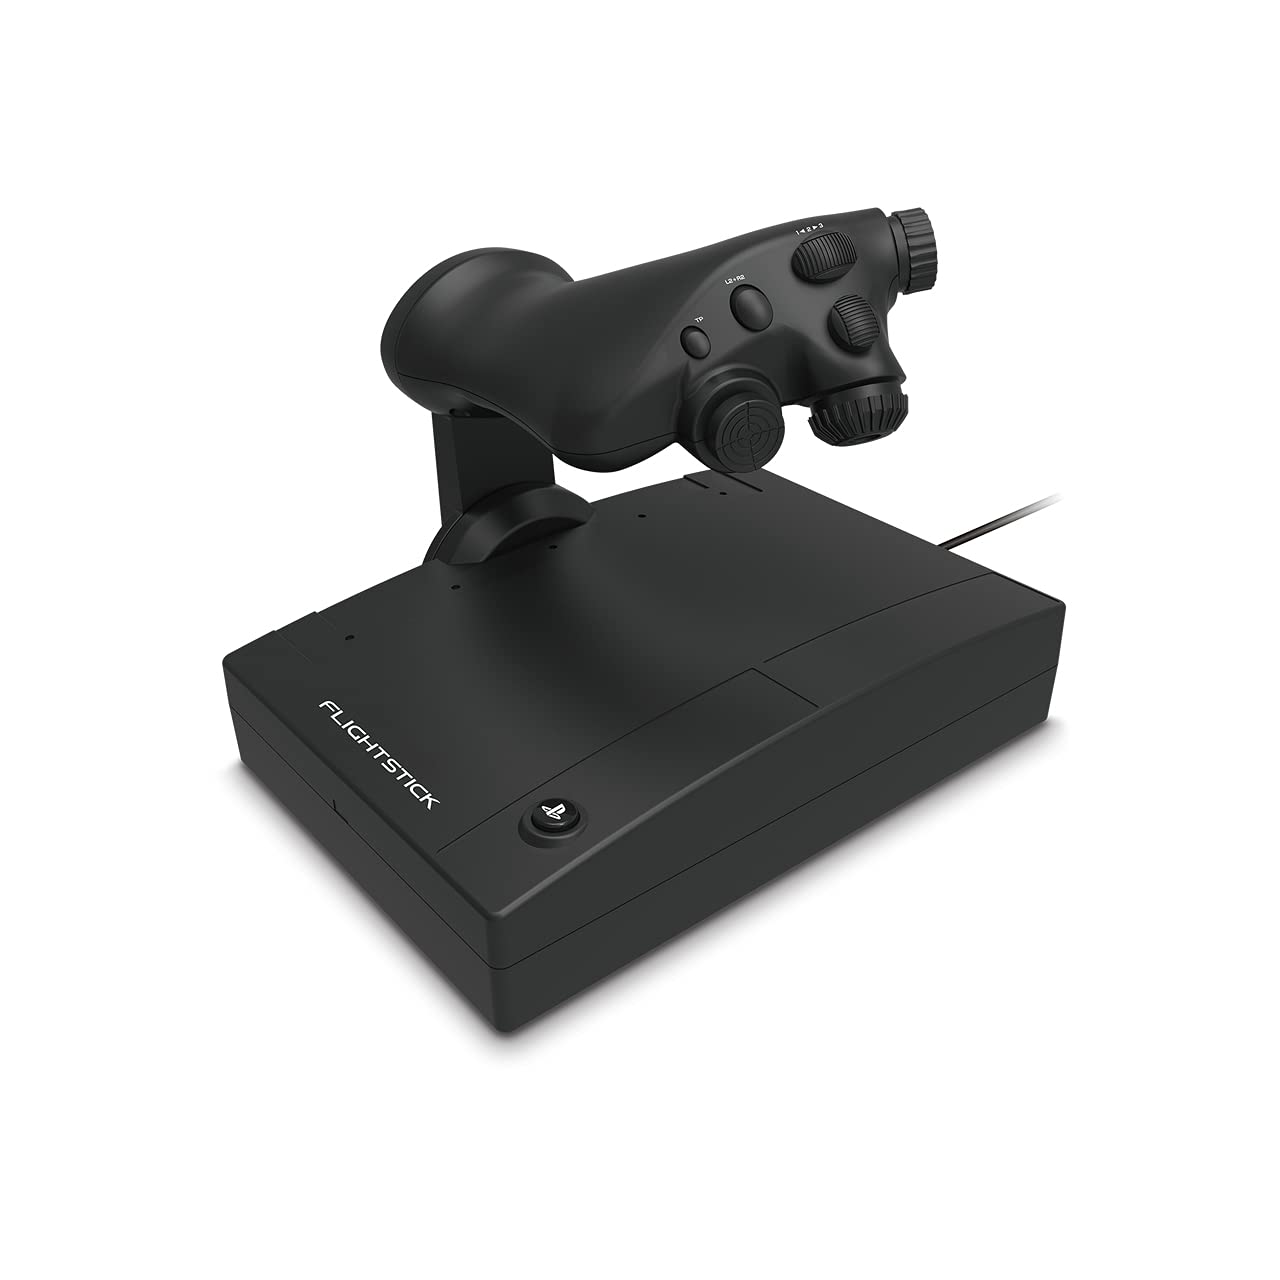 HORI HOTAS Flightstick für PlayStation 4 und PC - Offiziell Sony Lizenziert